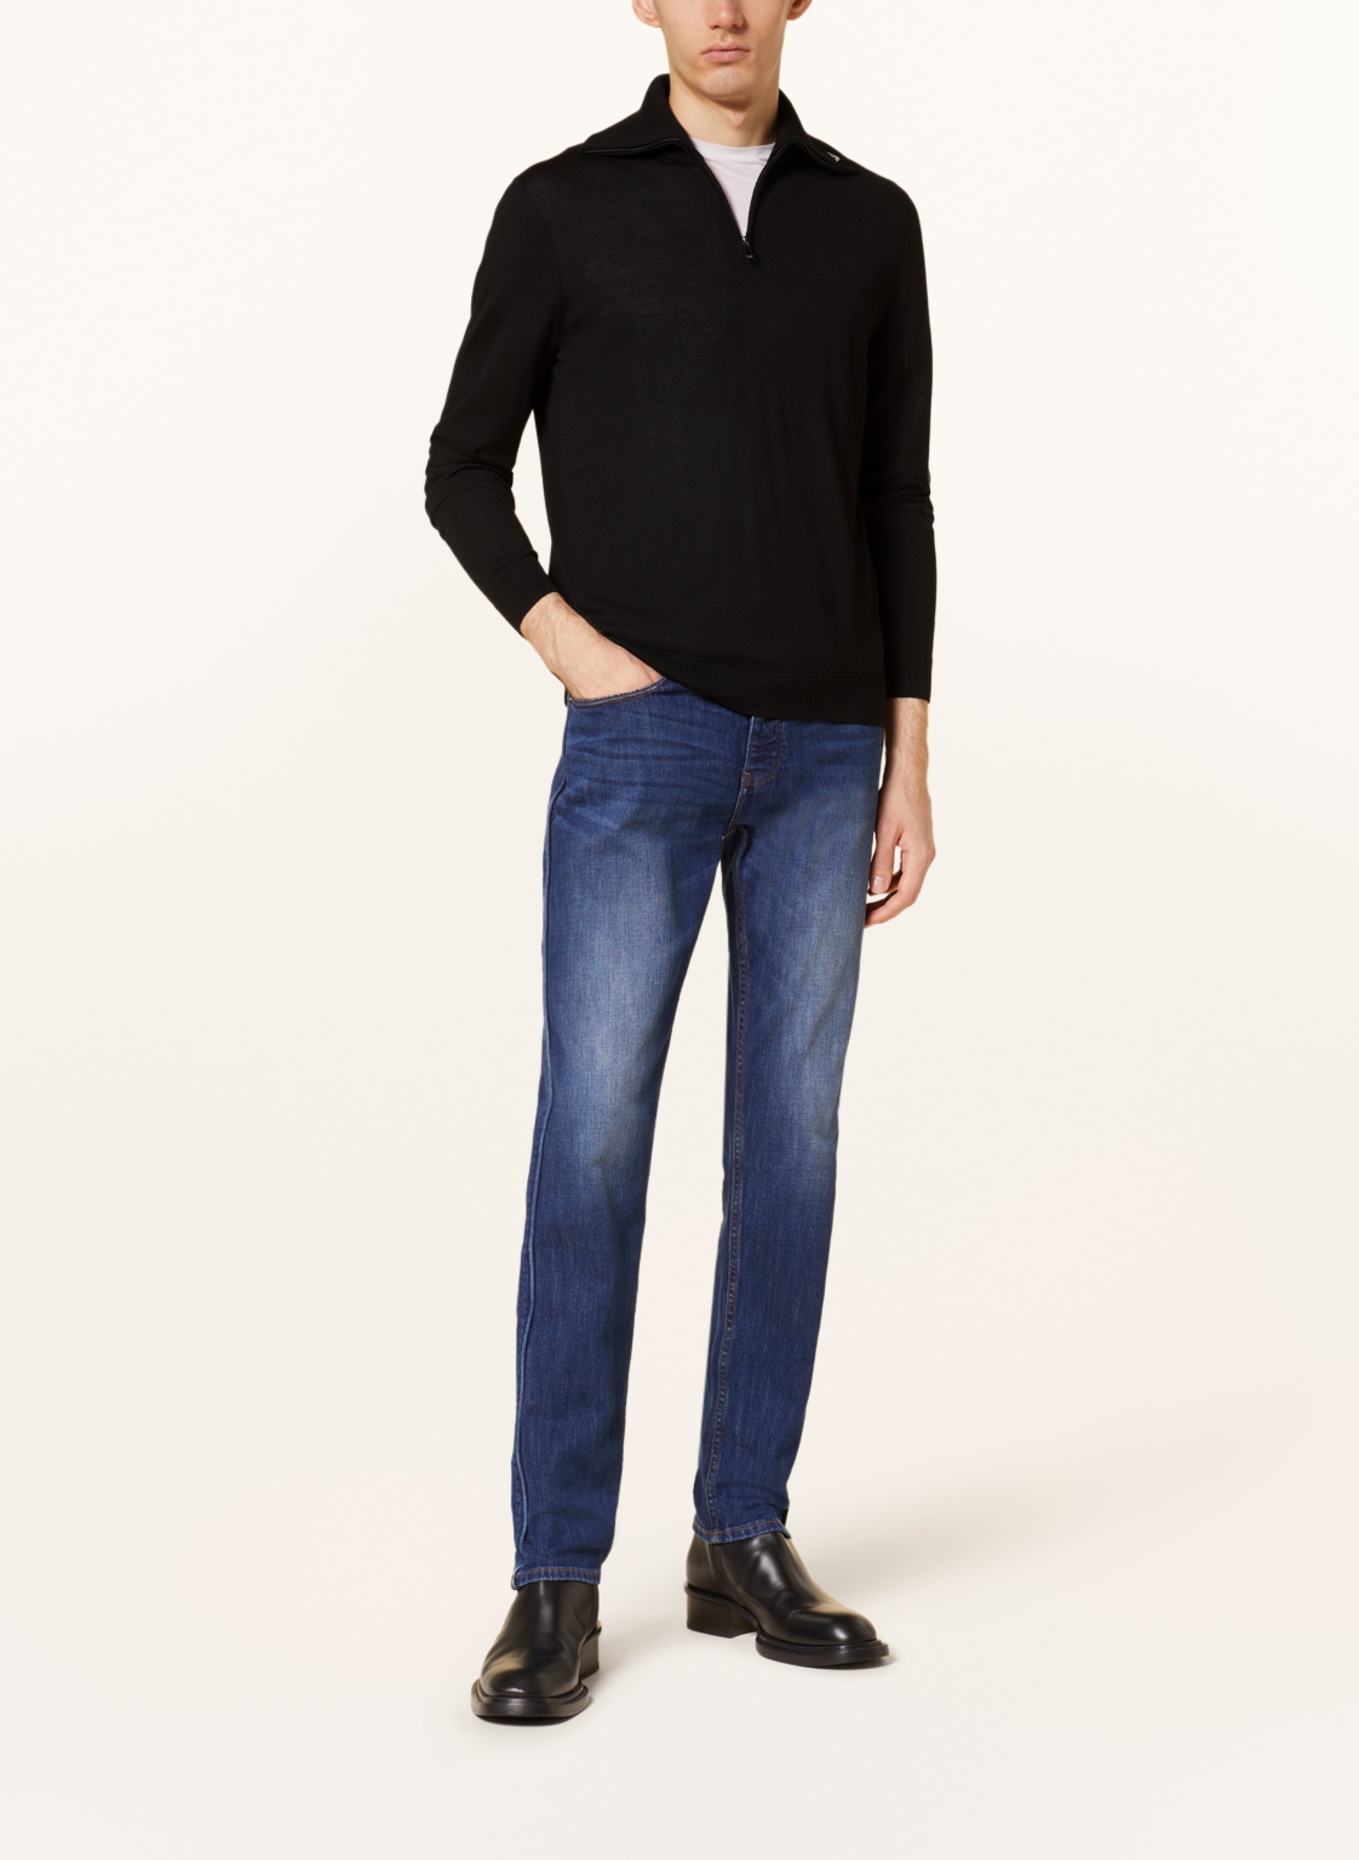 EMPORIO ARMANI Half-zip sweater, Color: BLACK (Image 2)